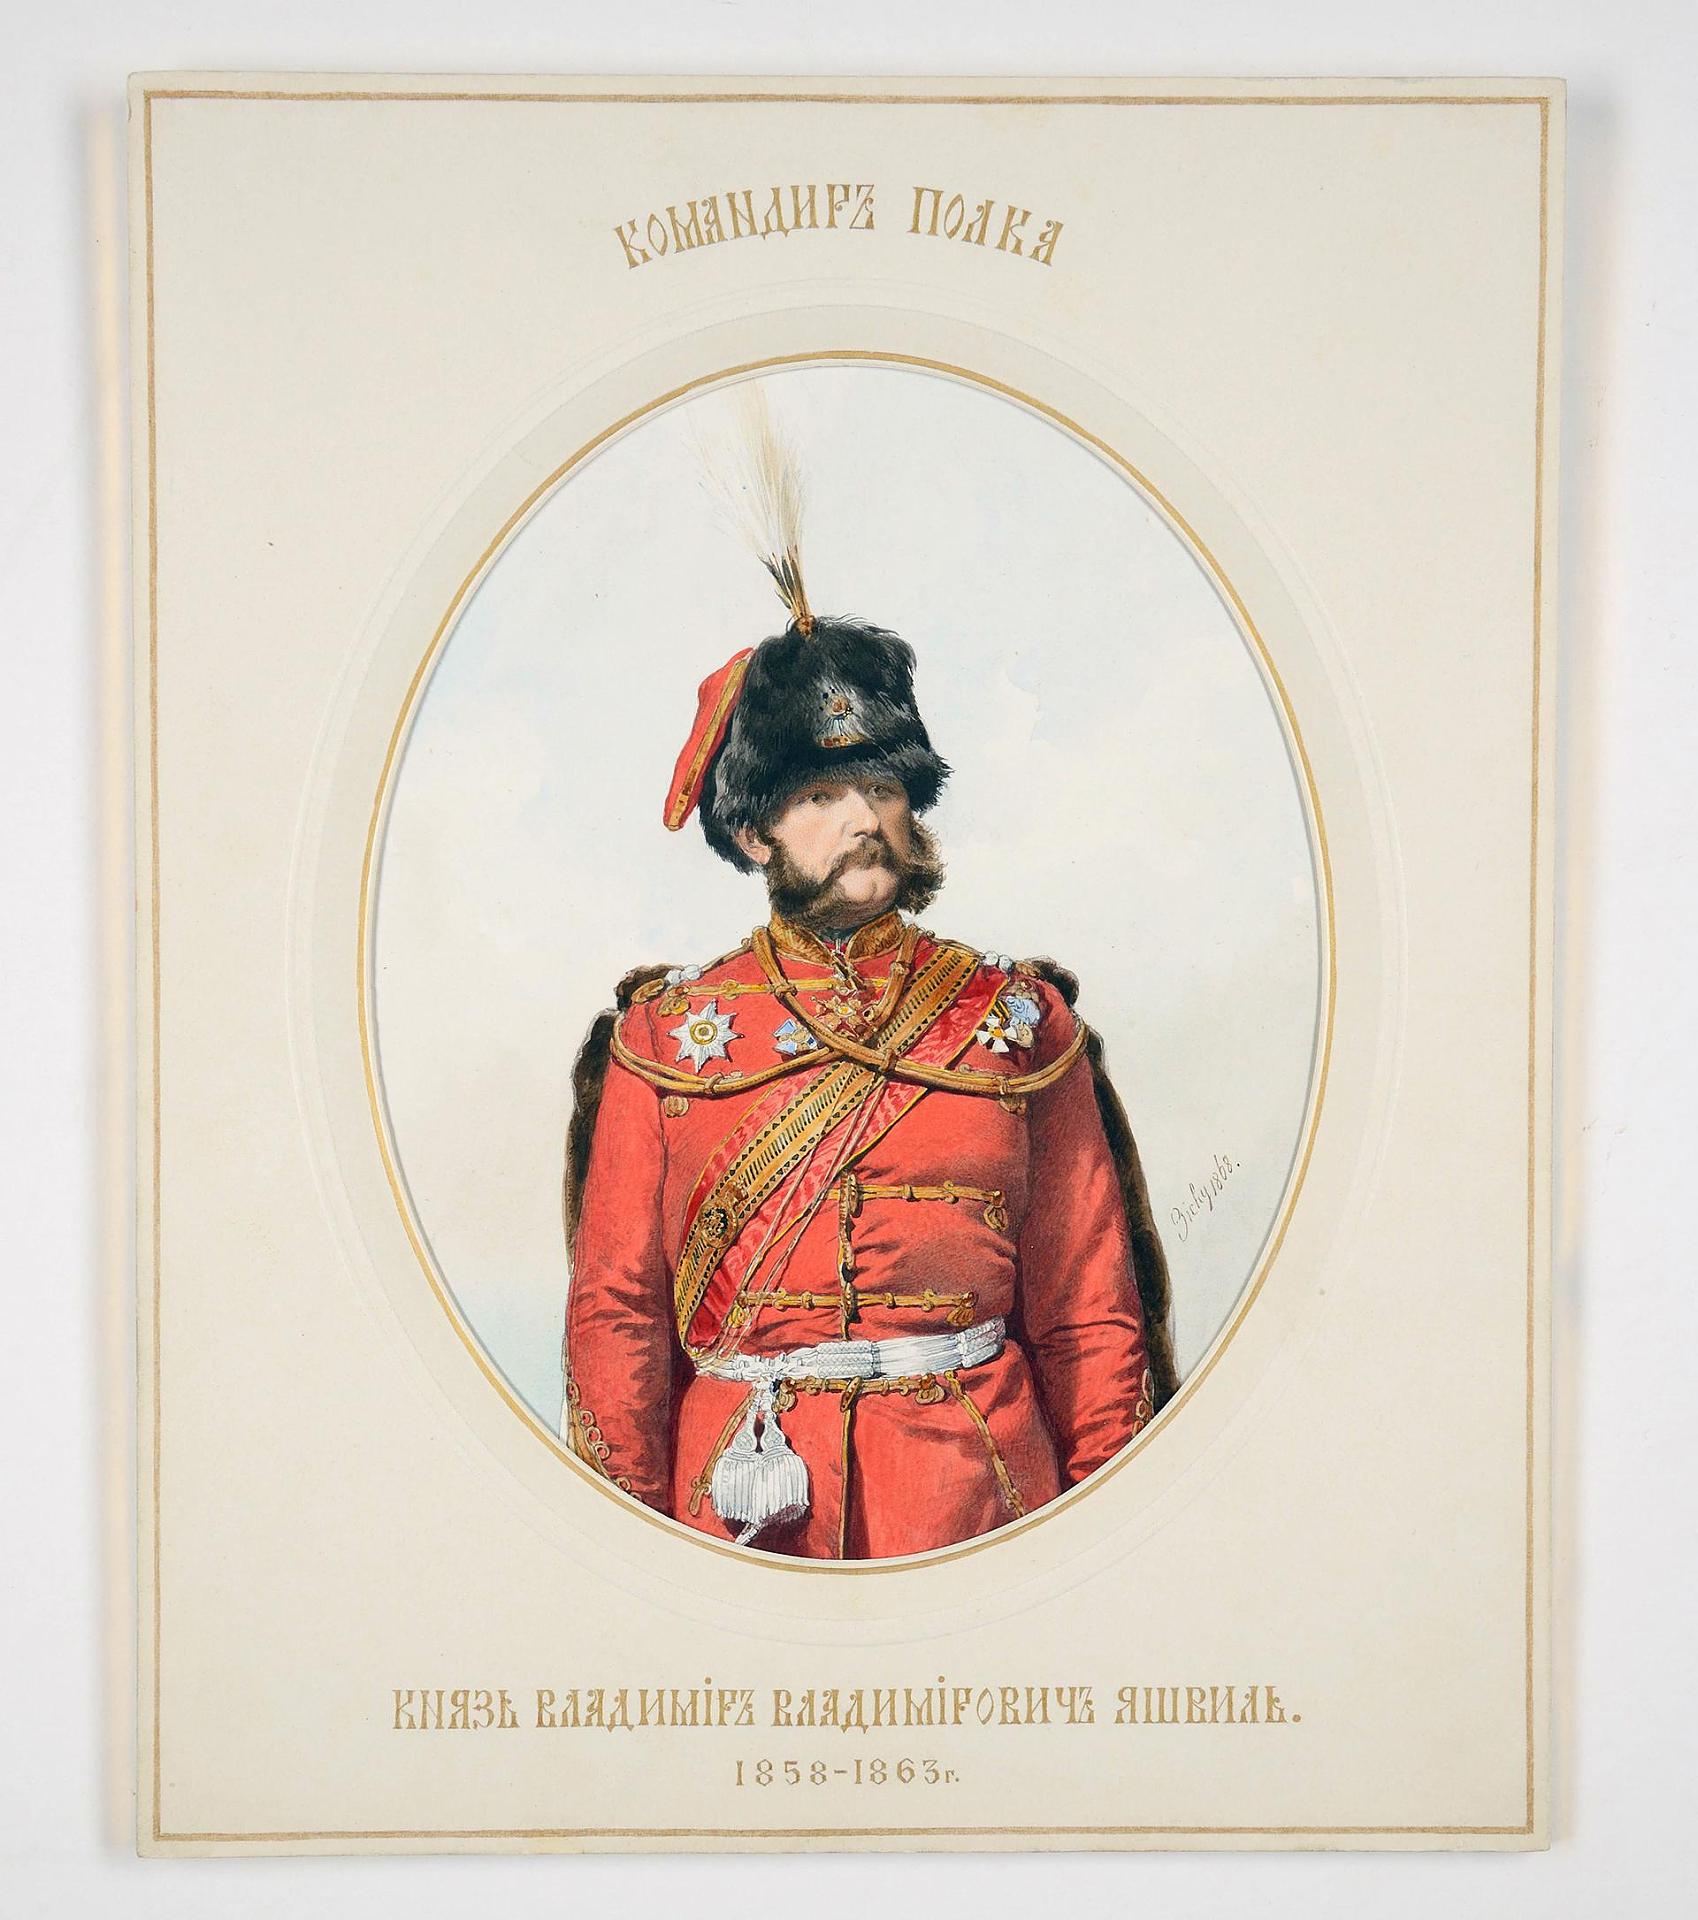 ვლადიმერ იაშვილი 1815-1864წწ რუსეთის გენერალი წარმ. სოფ. სხვავა ამბროლაური რაჭა